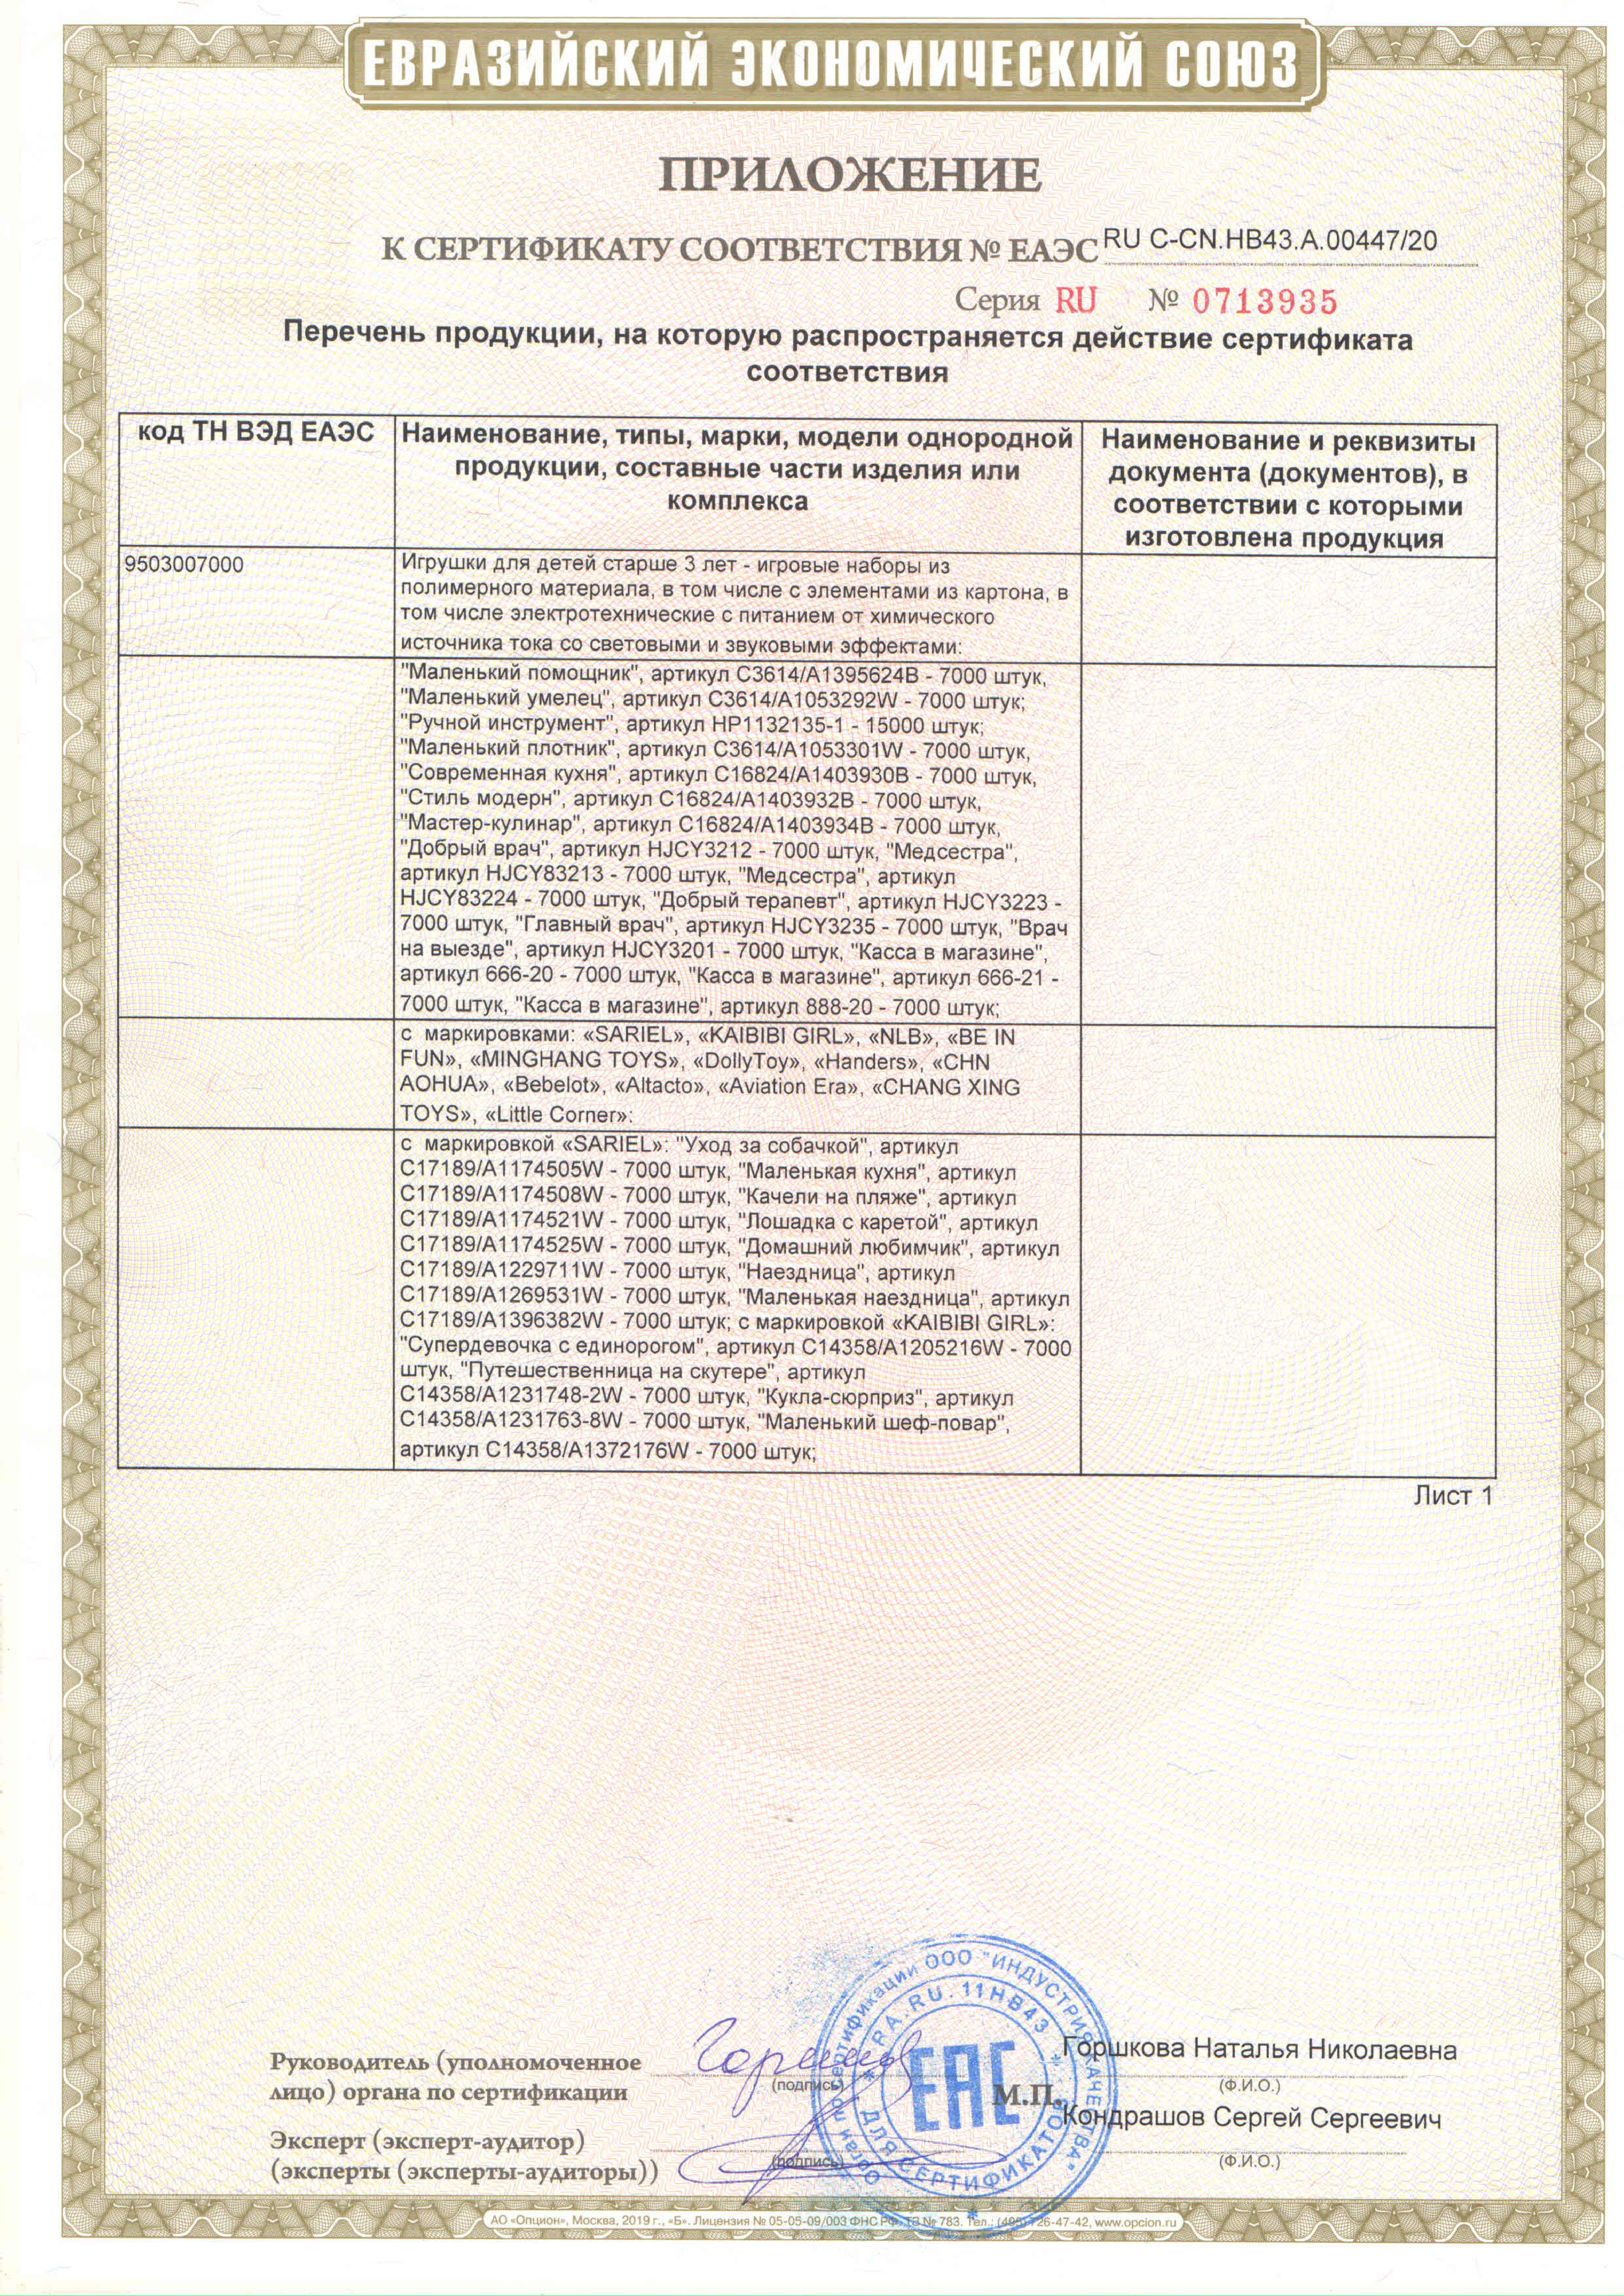 ЕАЭС RU C-CN.НВ43.А.00447 20: /images/certificates/EAES-RU-C-CN.NV43.A.00447-20-2.jpg